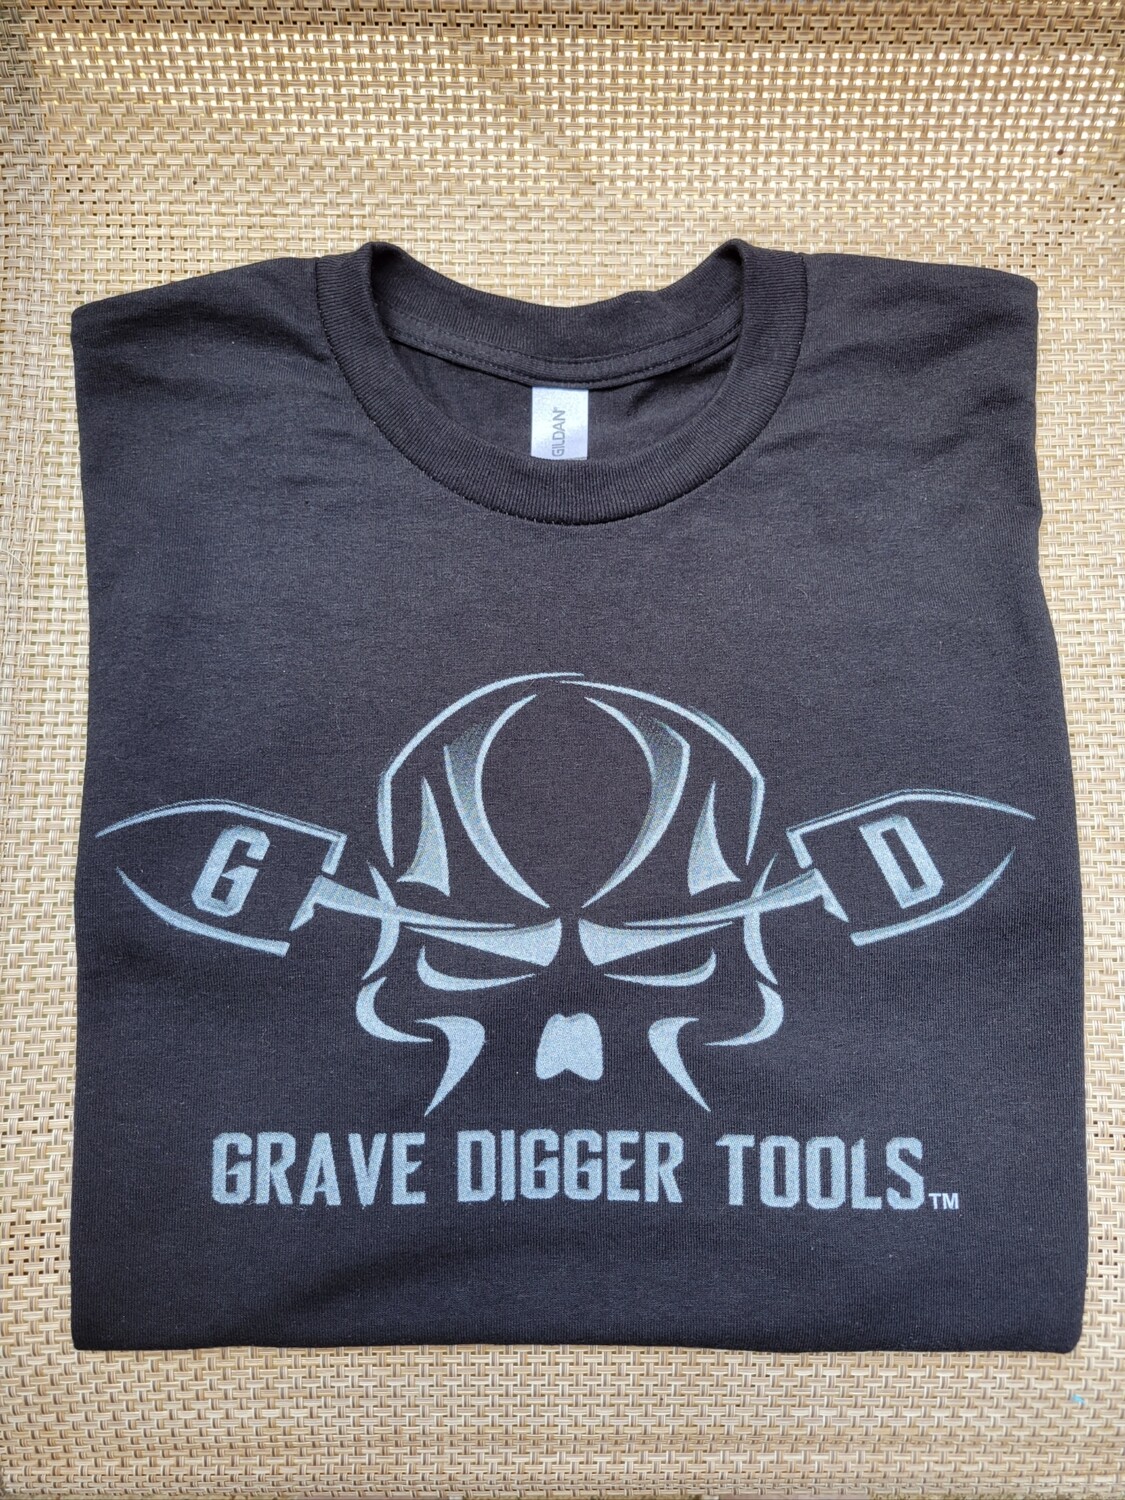 Grave Digger Tools Shirts